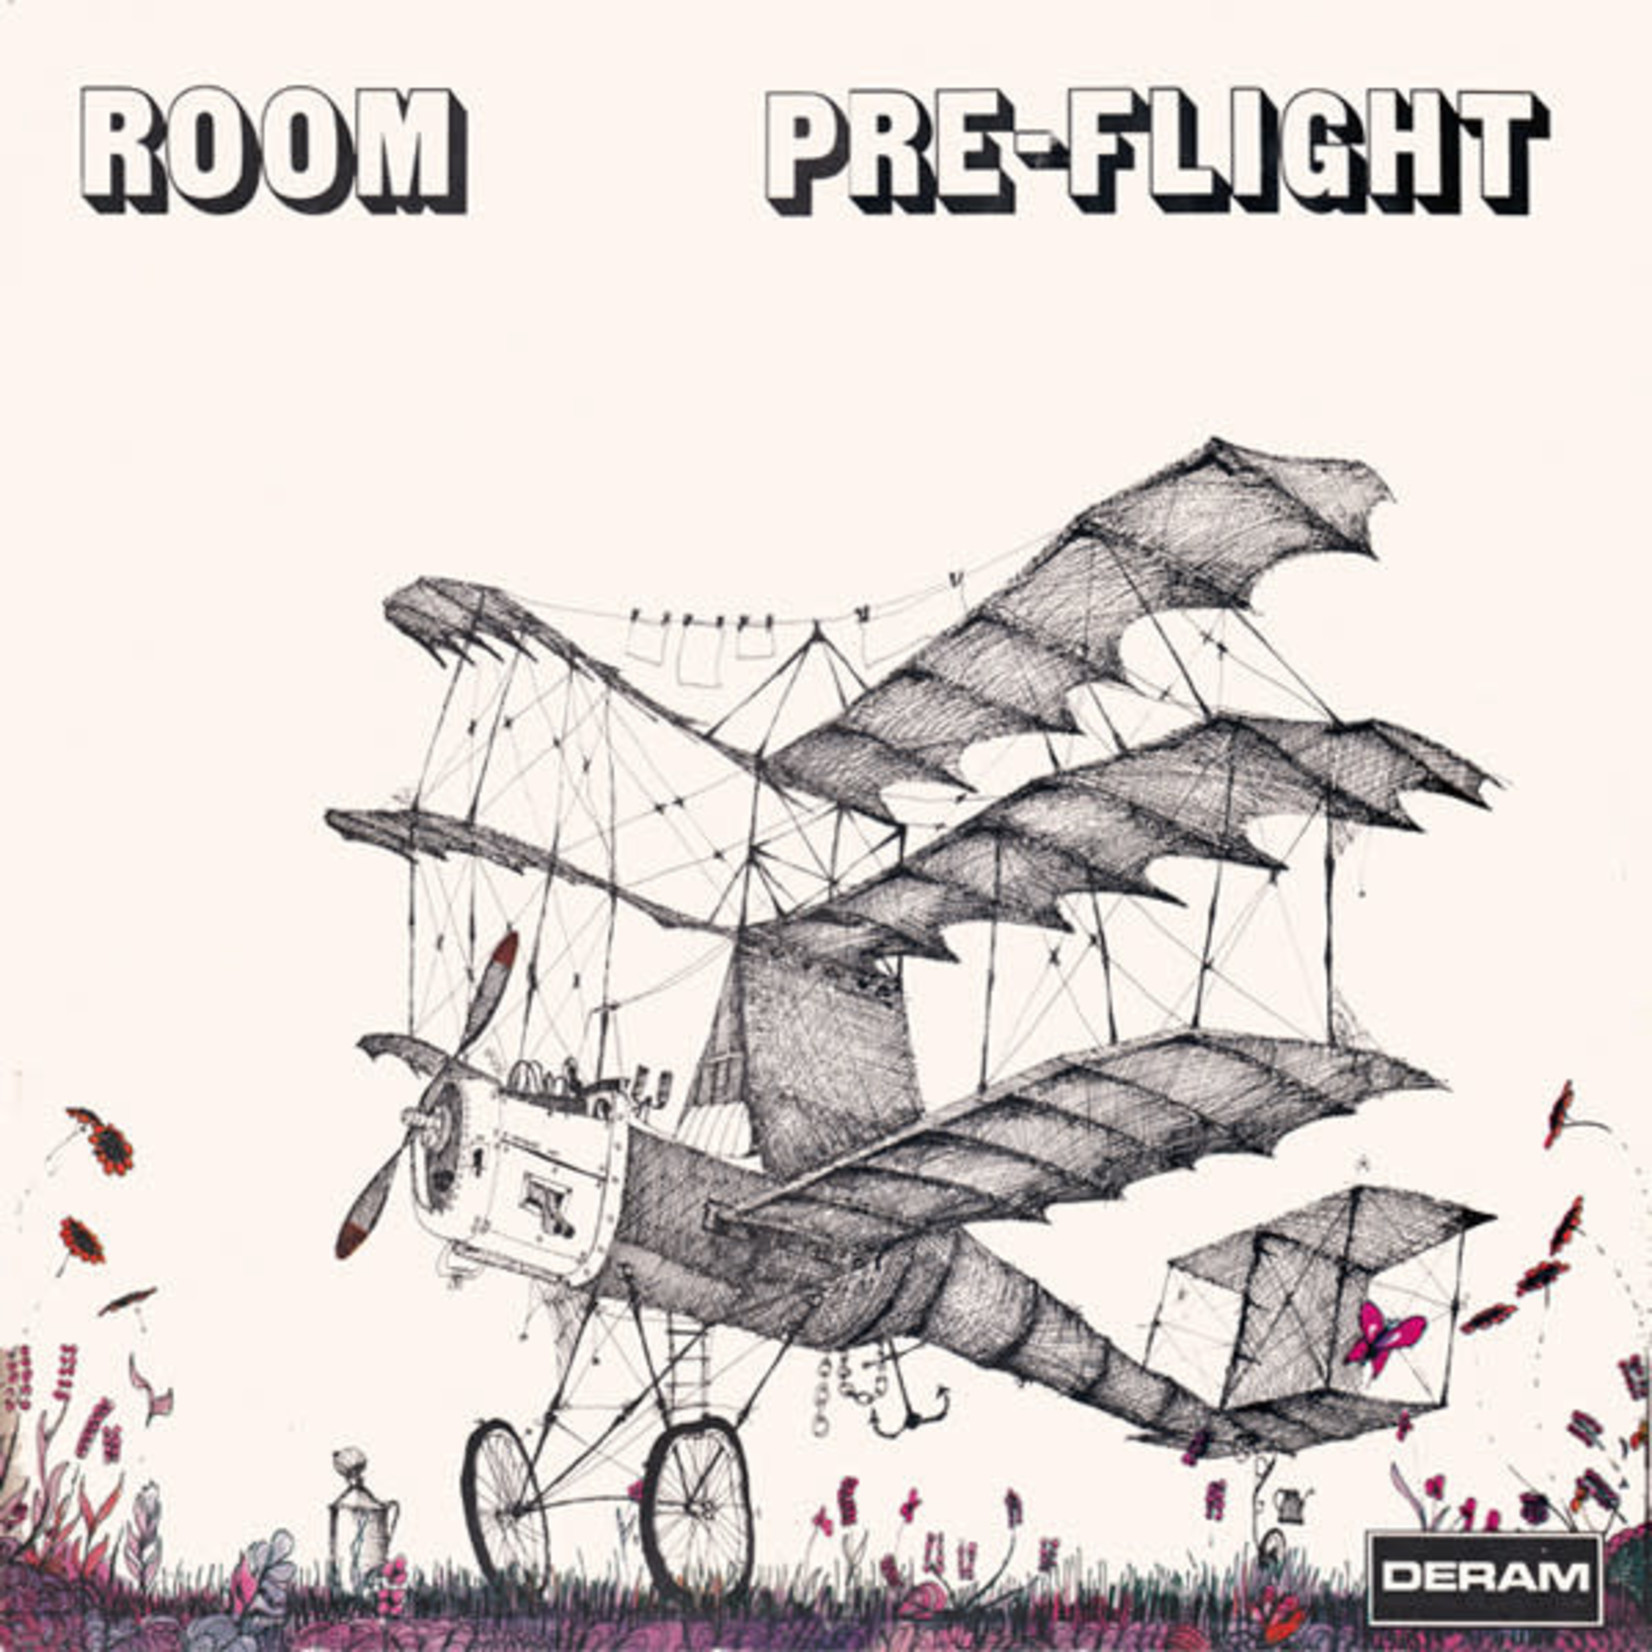 [New] Room: Pre-Flight [AKARMA]